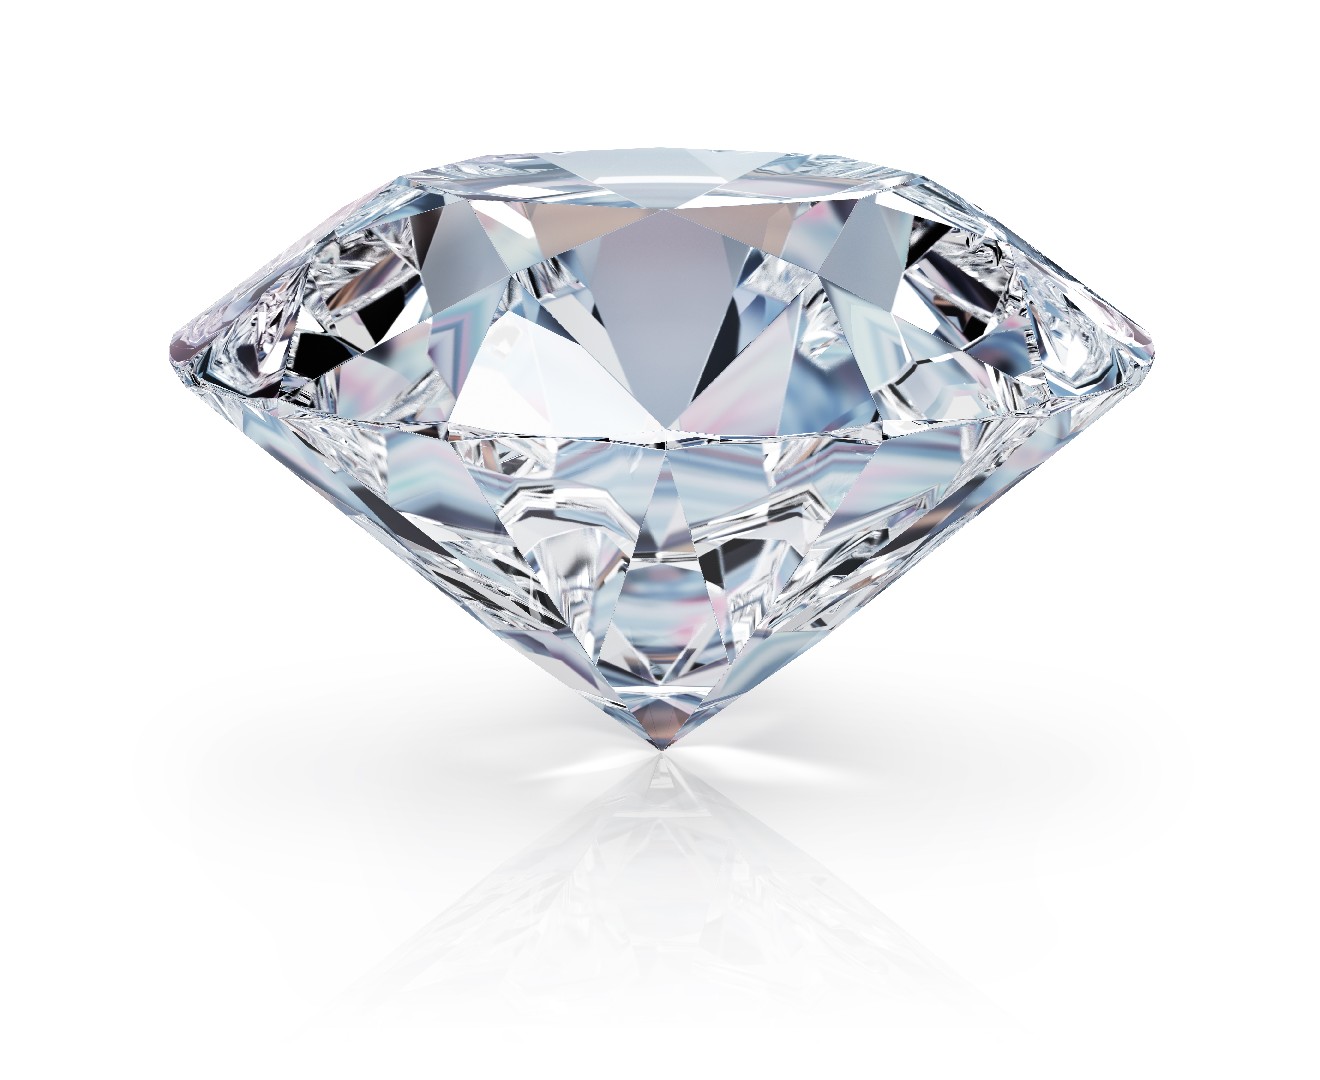 Diamante (piedra preciosa) (Diamond gemstone)